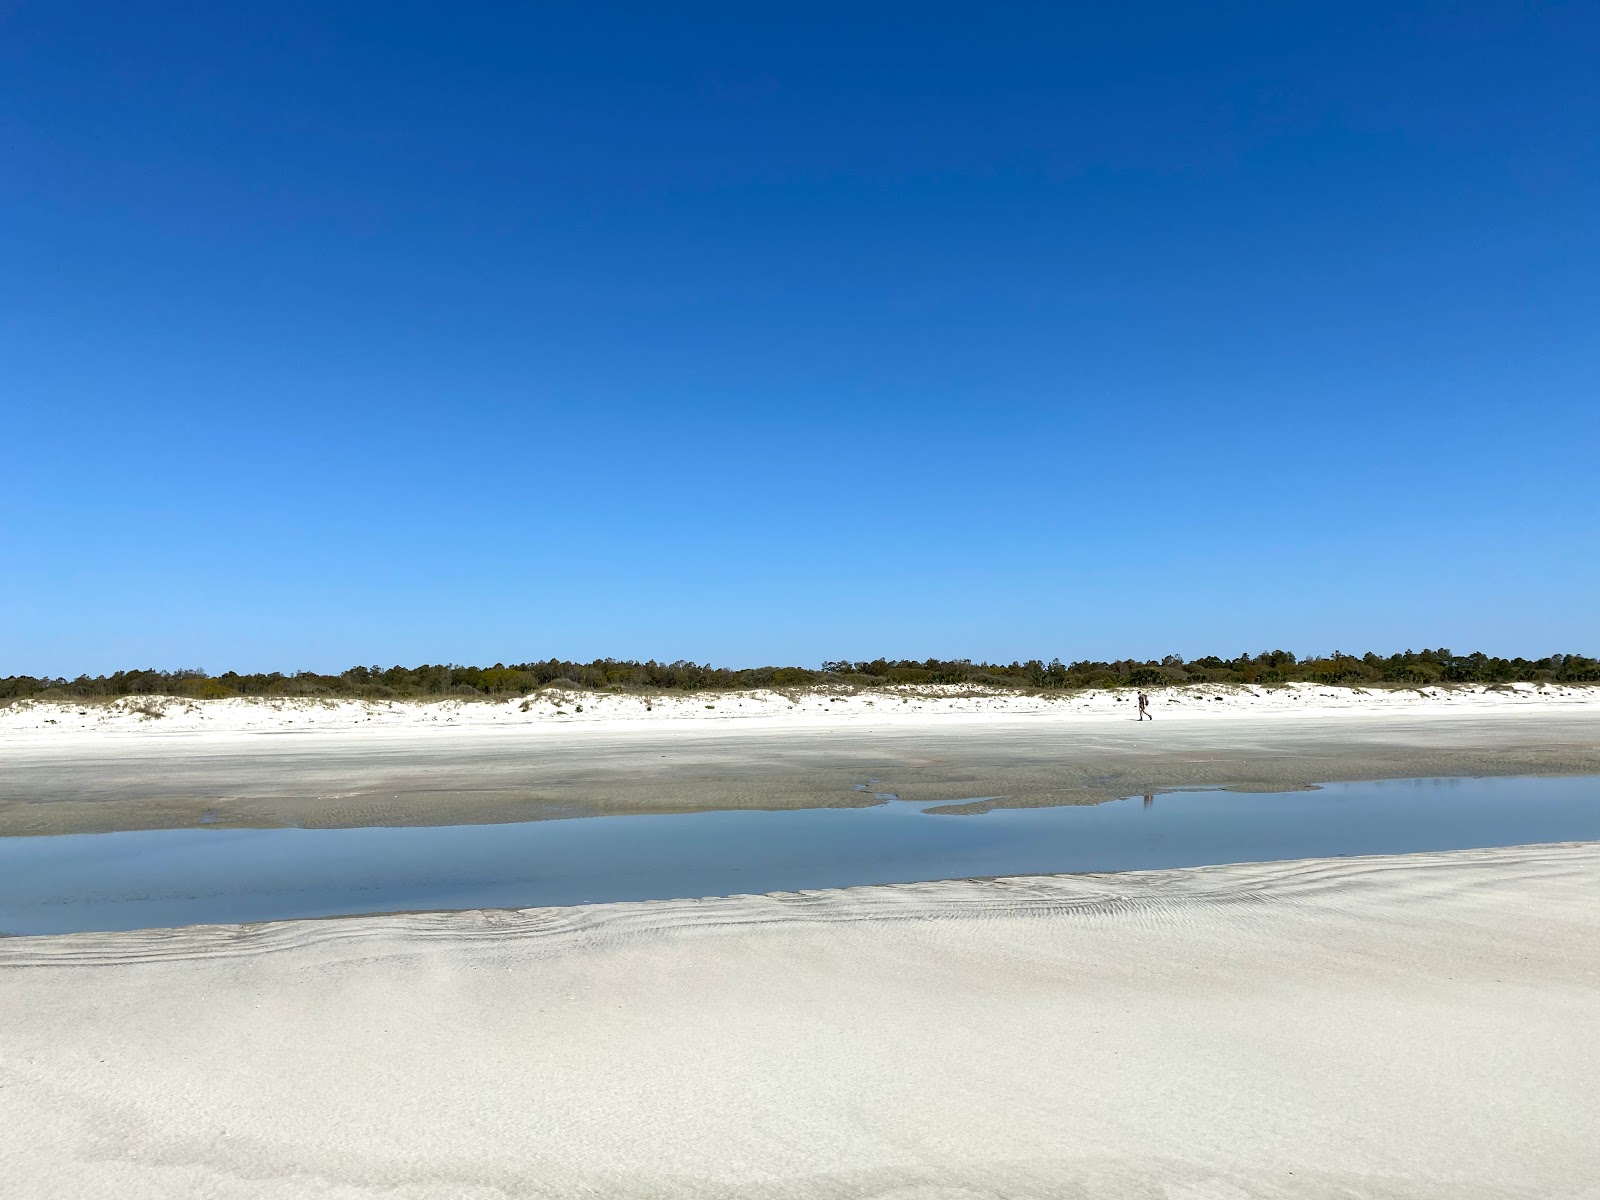 Foto von Stafford beach mit langer gerader strand